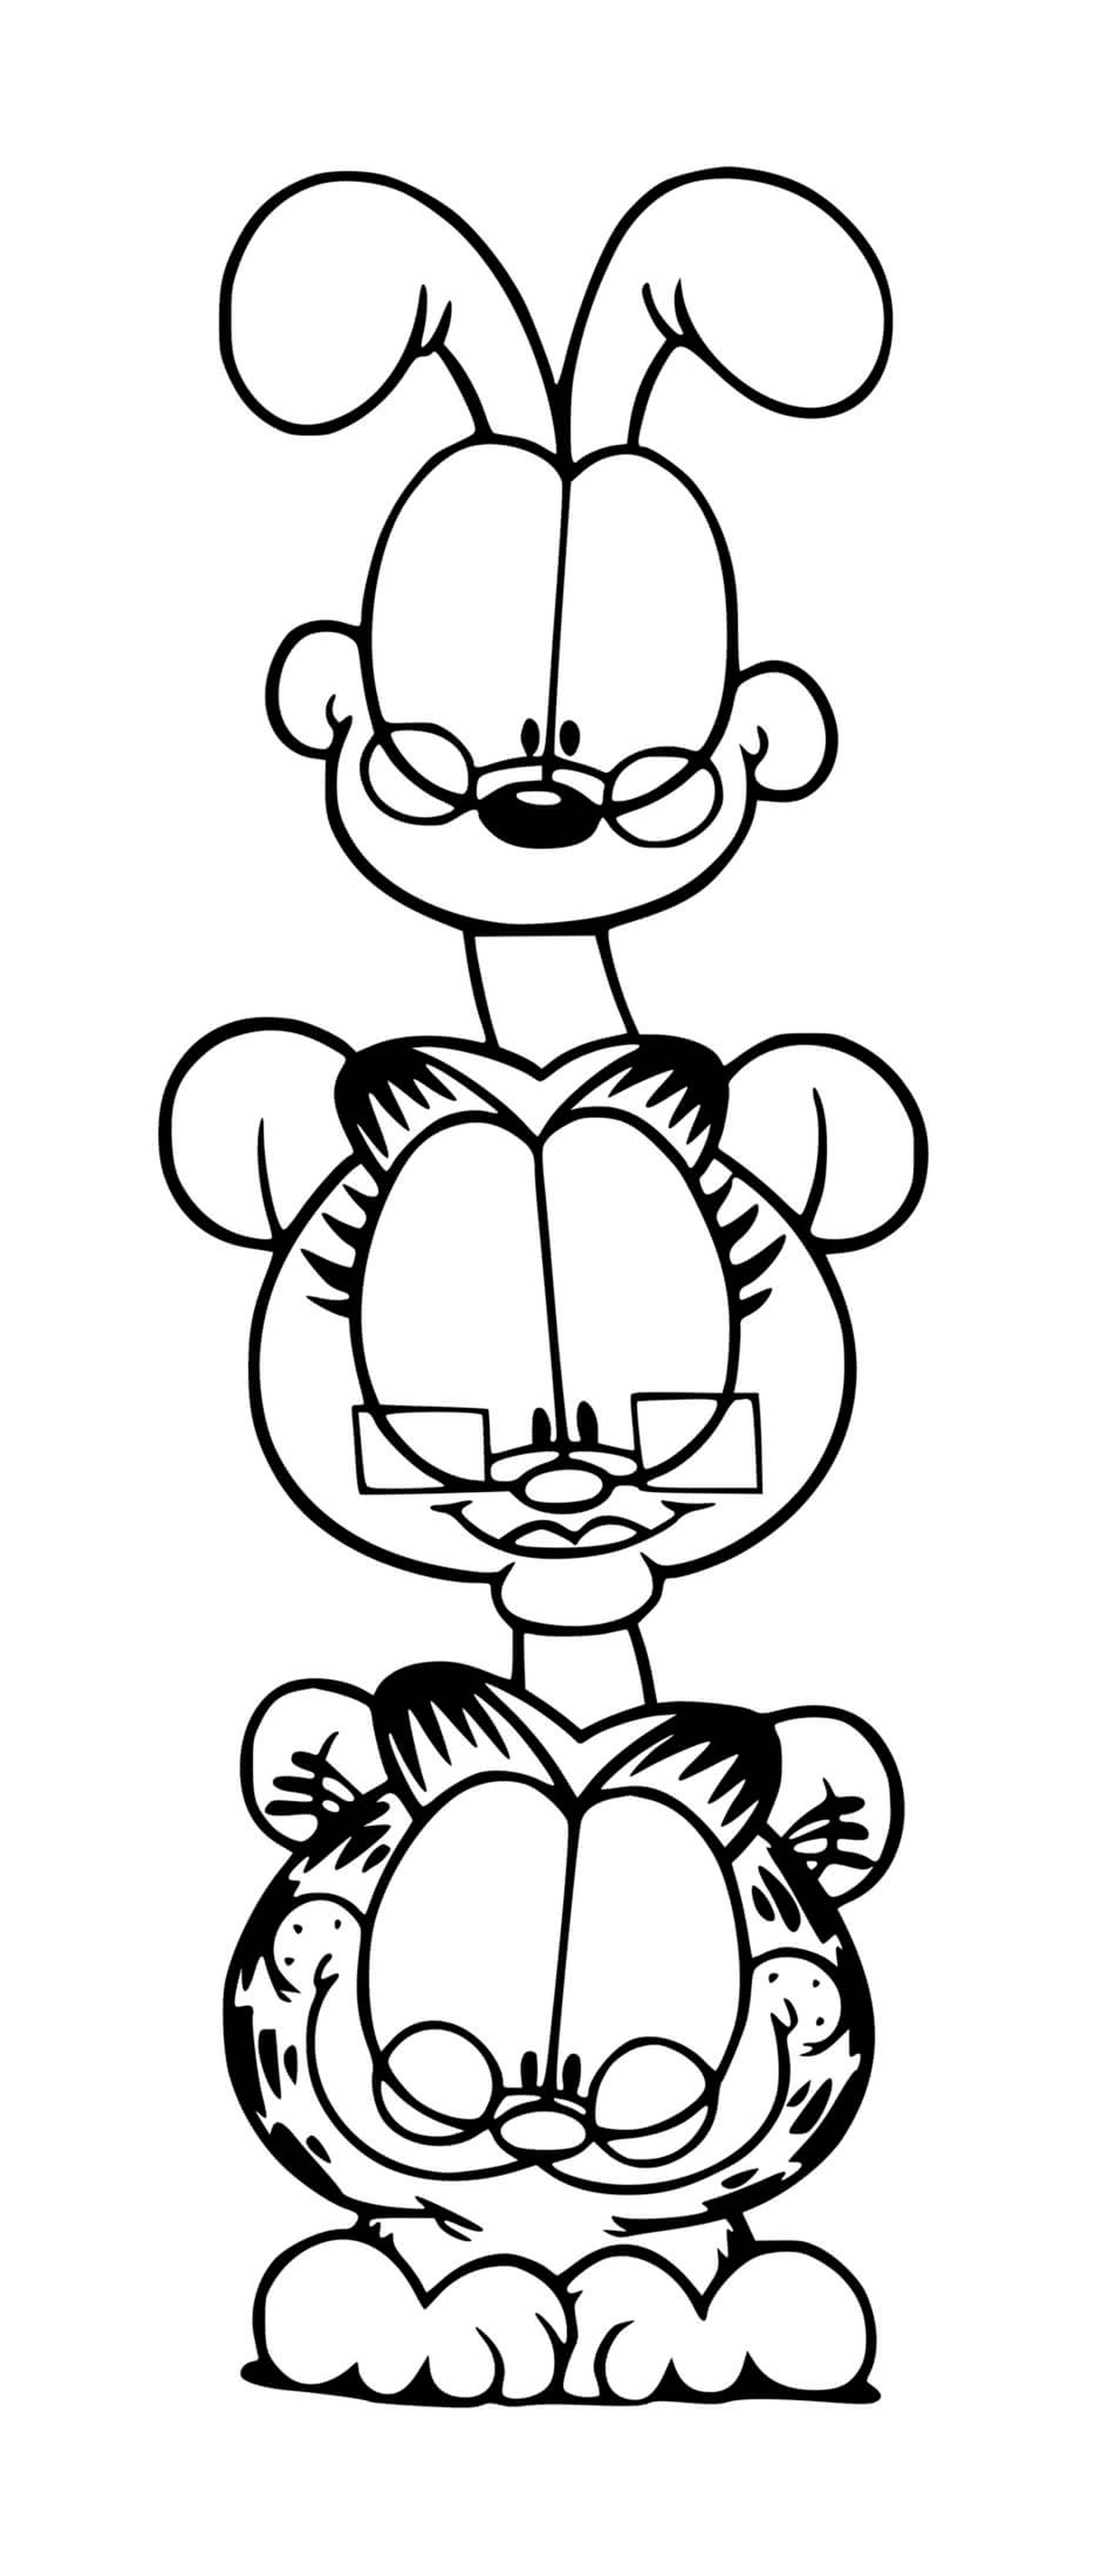  Garfield, Odie und Nermal als Komplizen 